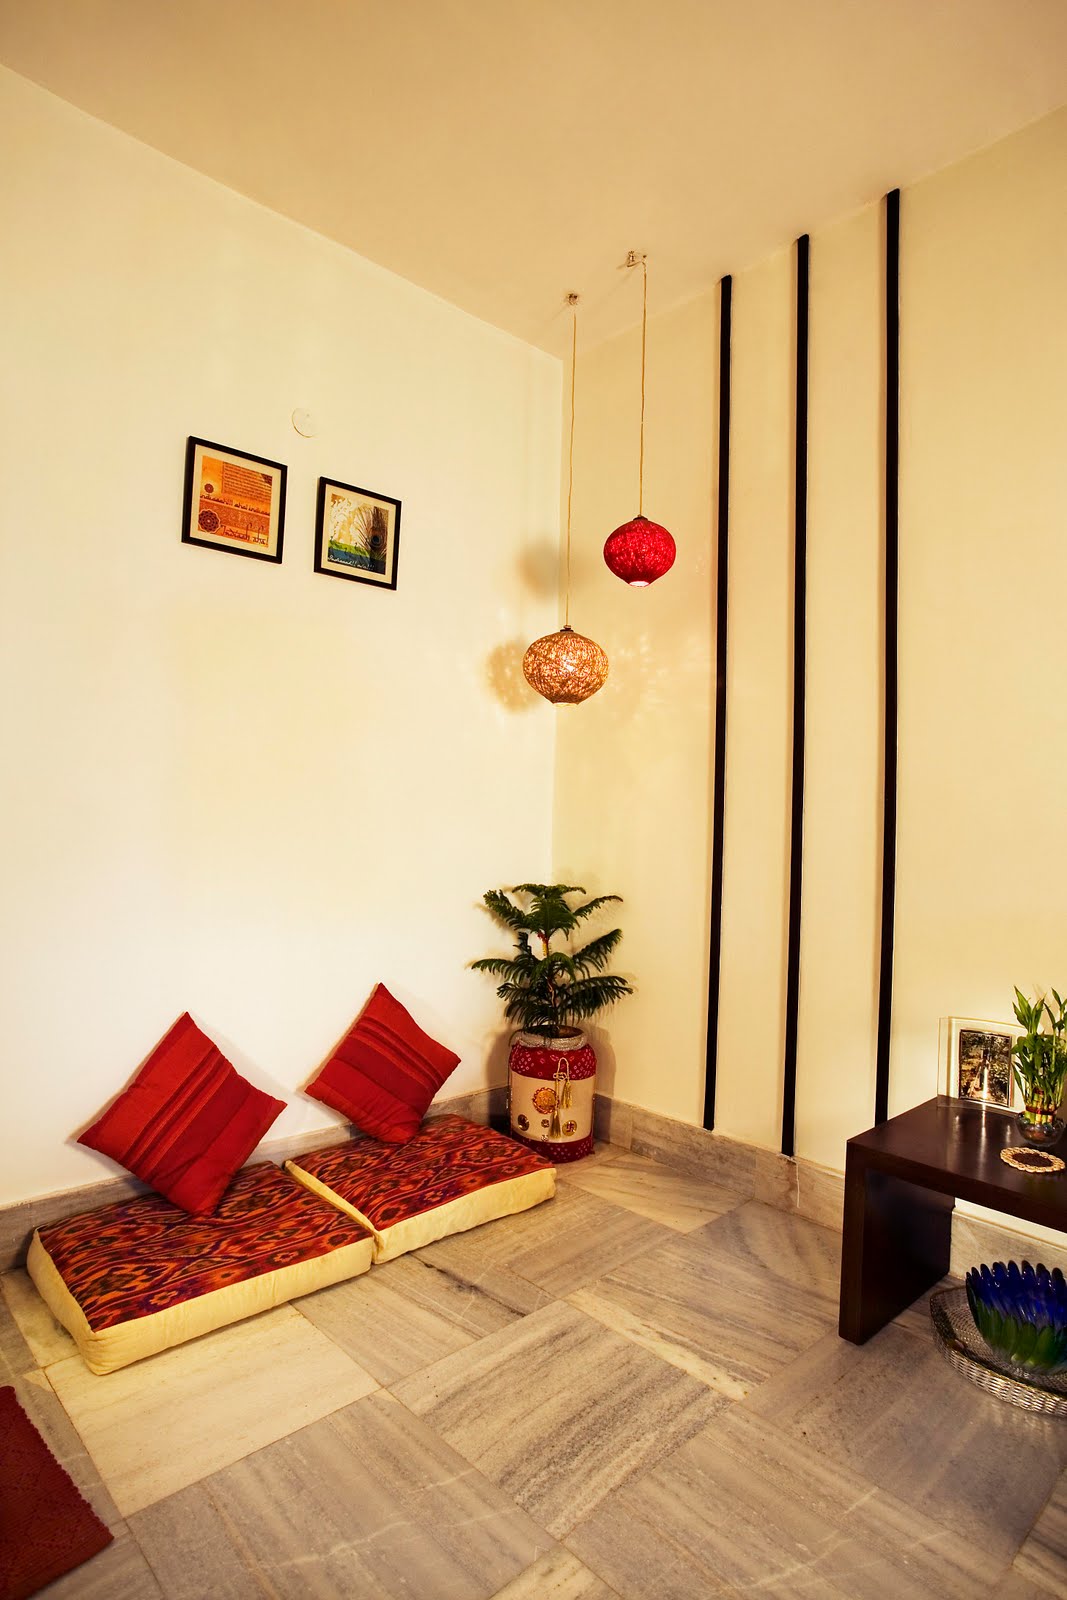 Indian home decor | Coloursdekor's Blog